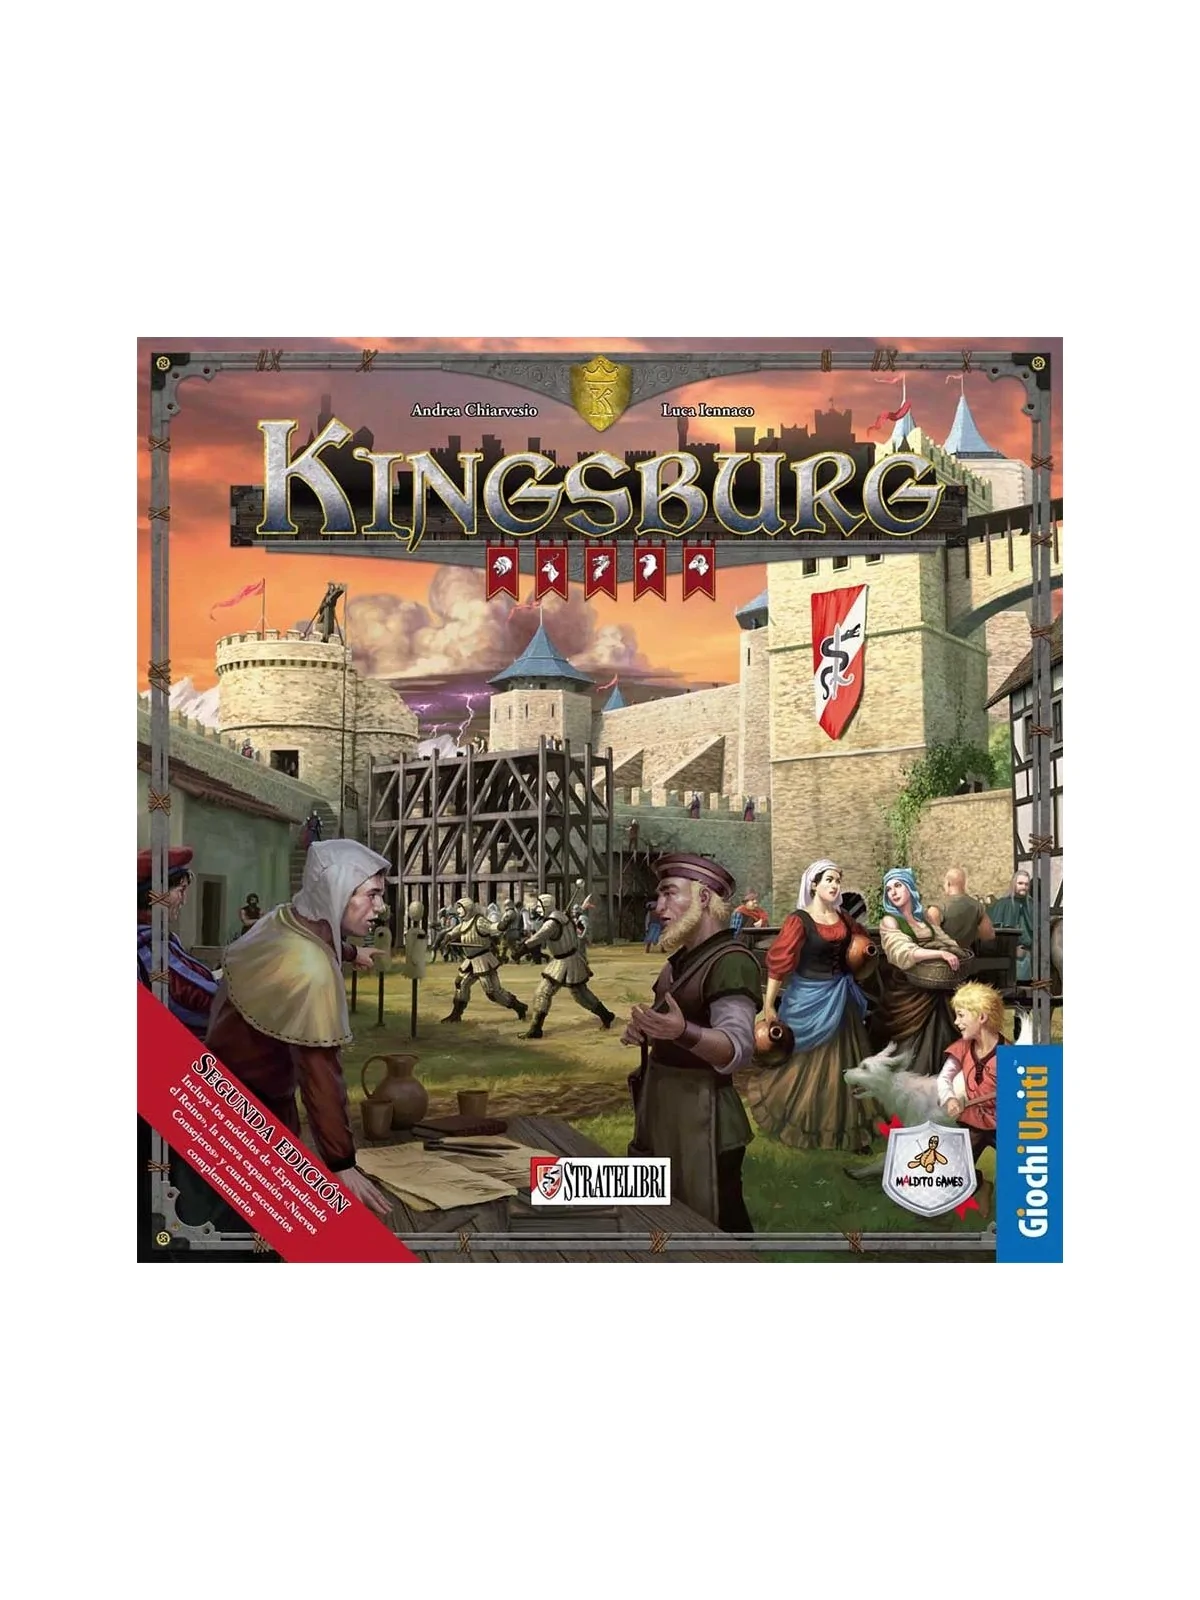 Comprar Kingsburg (Segunda Edición) barato al mejor precio 45,00 € de 